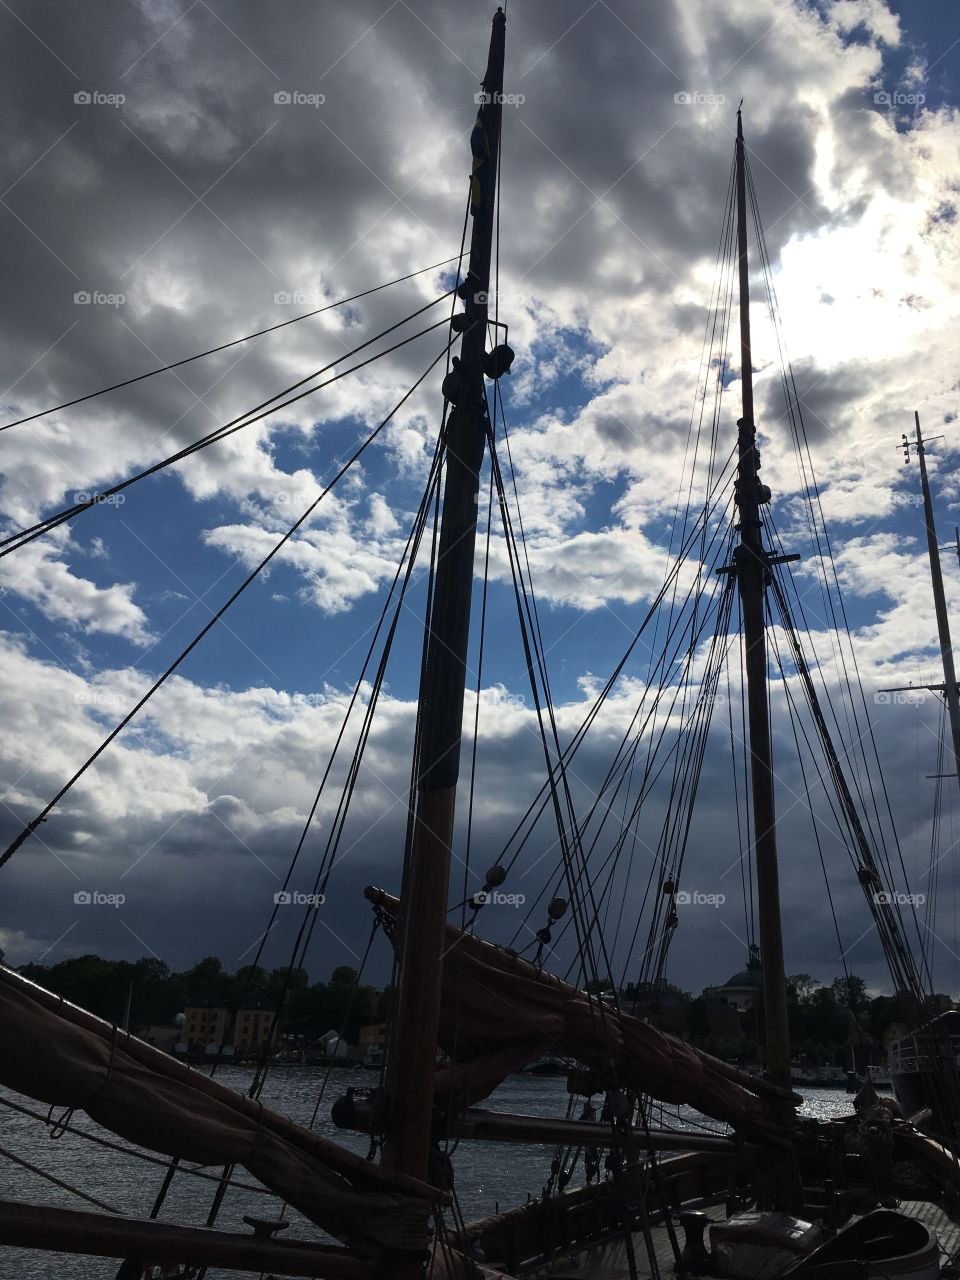 Sailingship